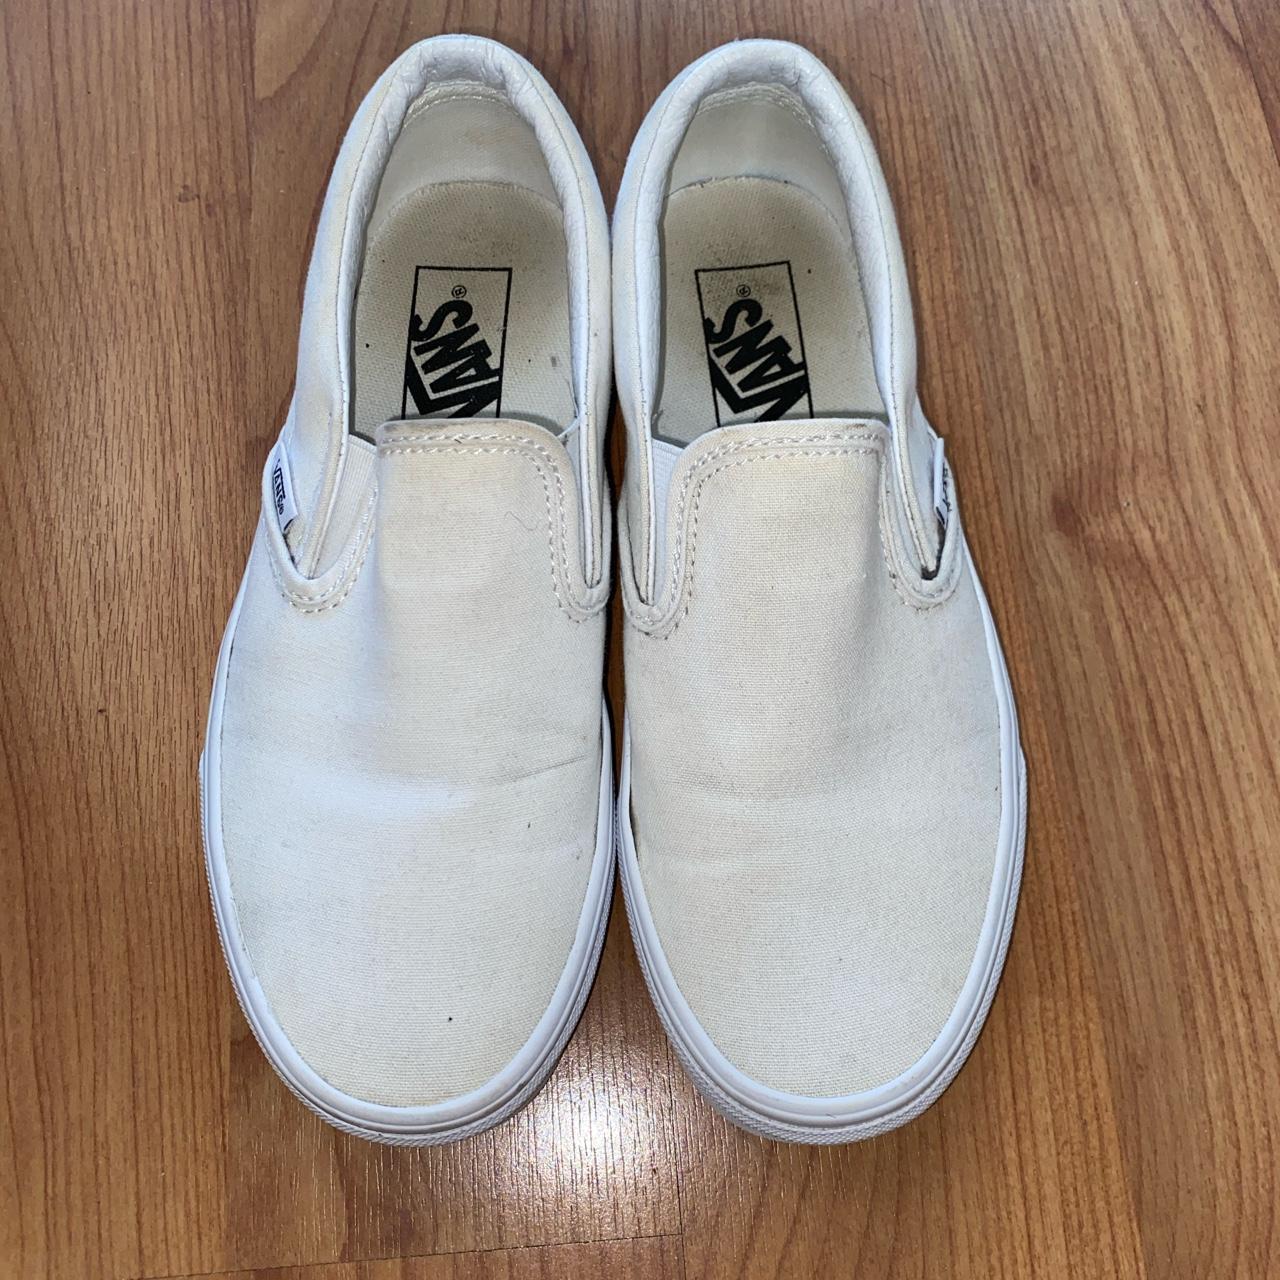 Vans Classic Slip-On Stackform Shoe